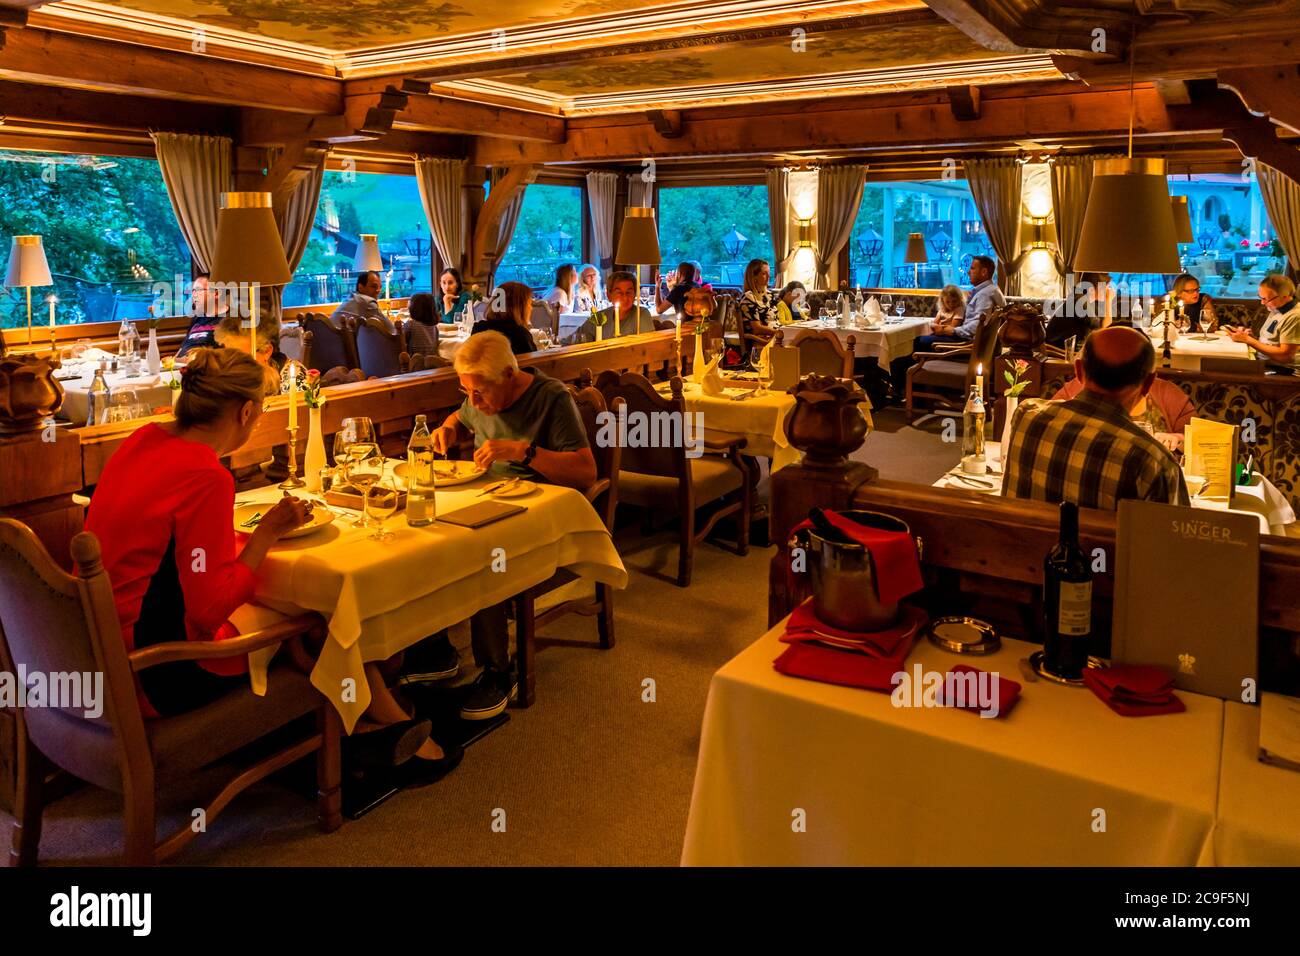 People eating in Restaurant in Berwang, Austria Stock Photo